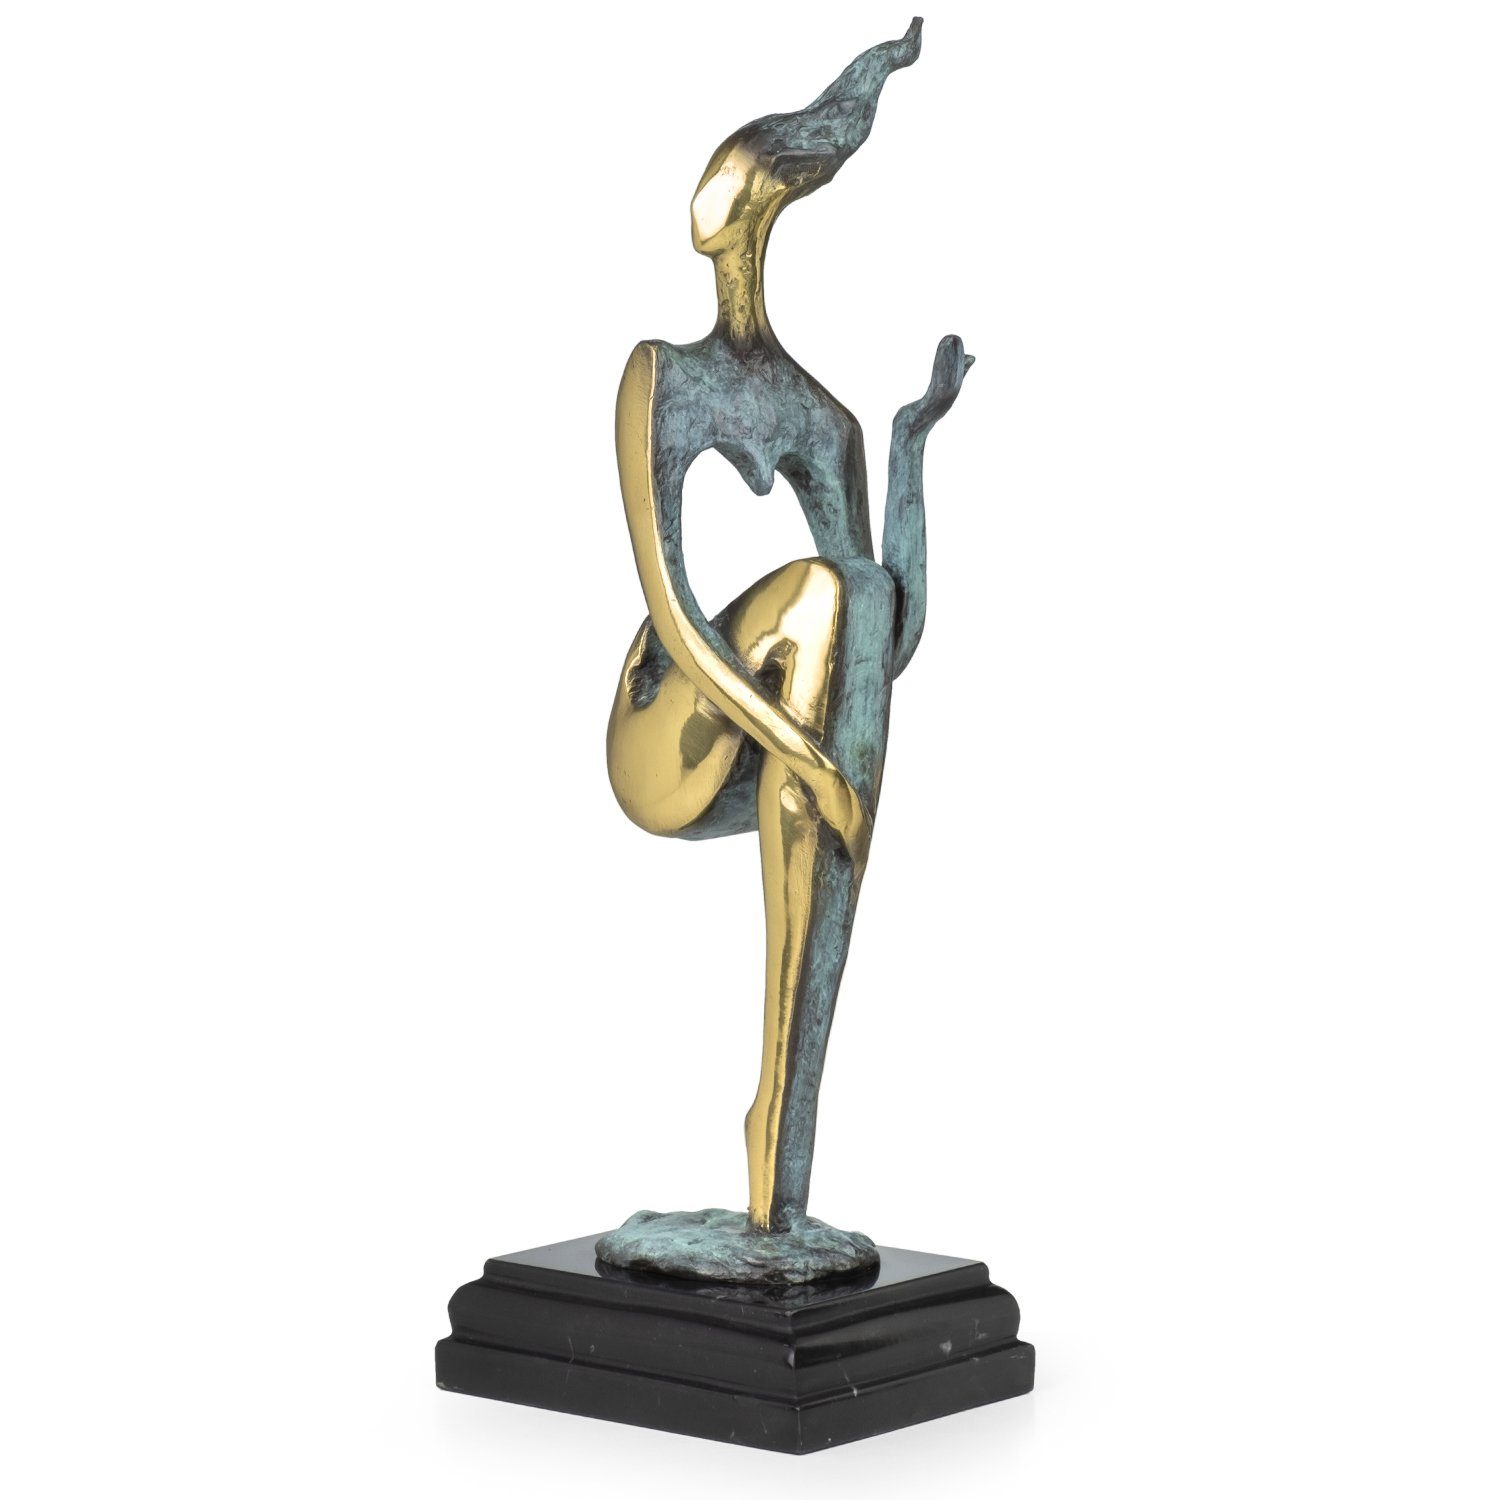 Schreibtisch Vitrine Skulptur Deko Bronzefigur für Weiblicher Bronzefigur Moritz Figuren abstrakt, Regal Dekofigur Akt